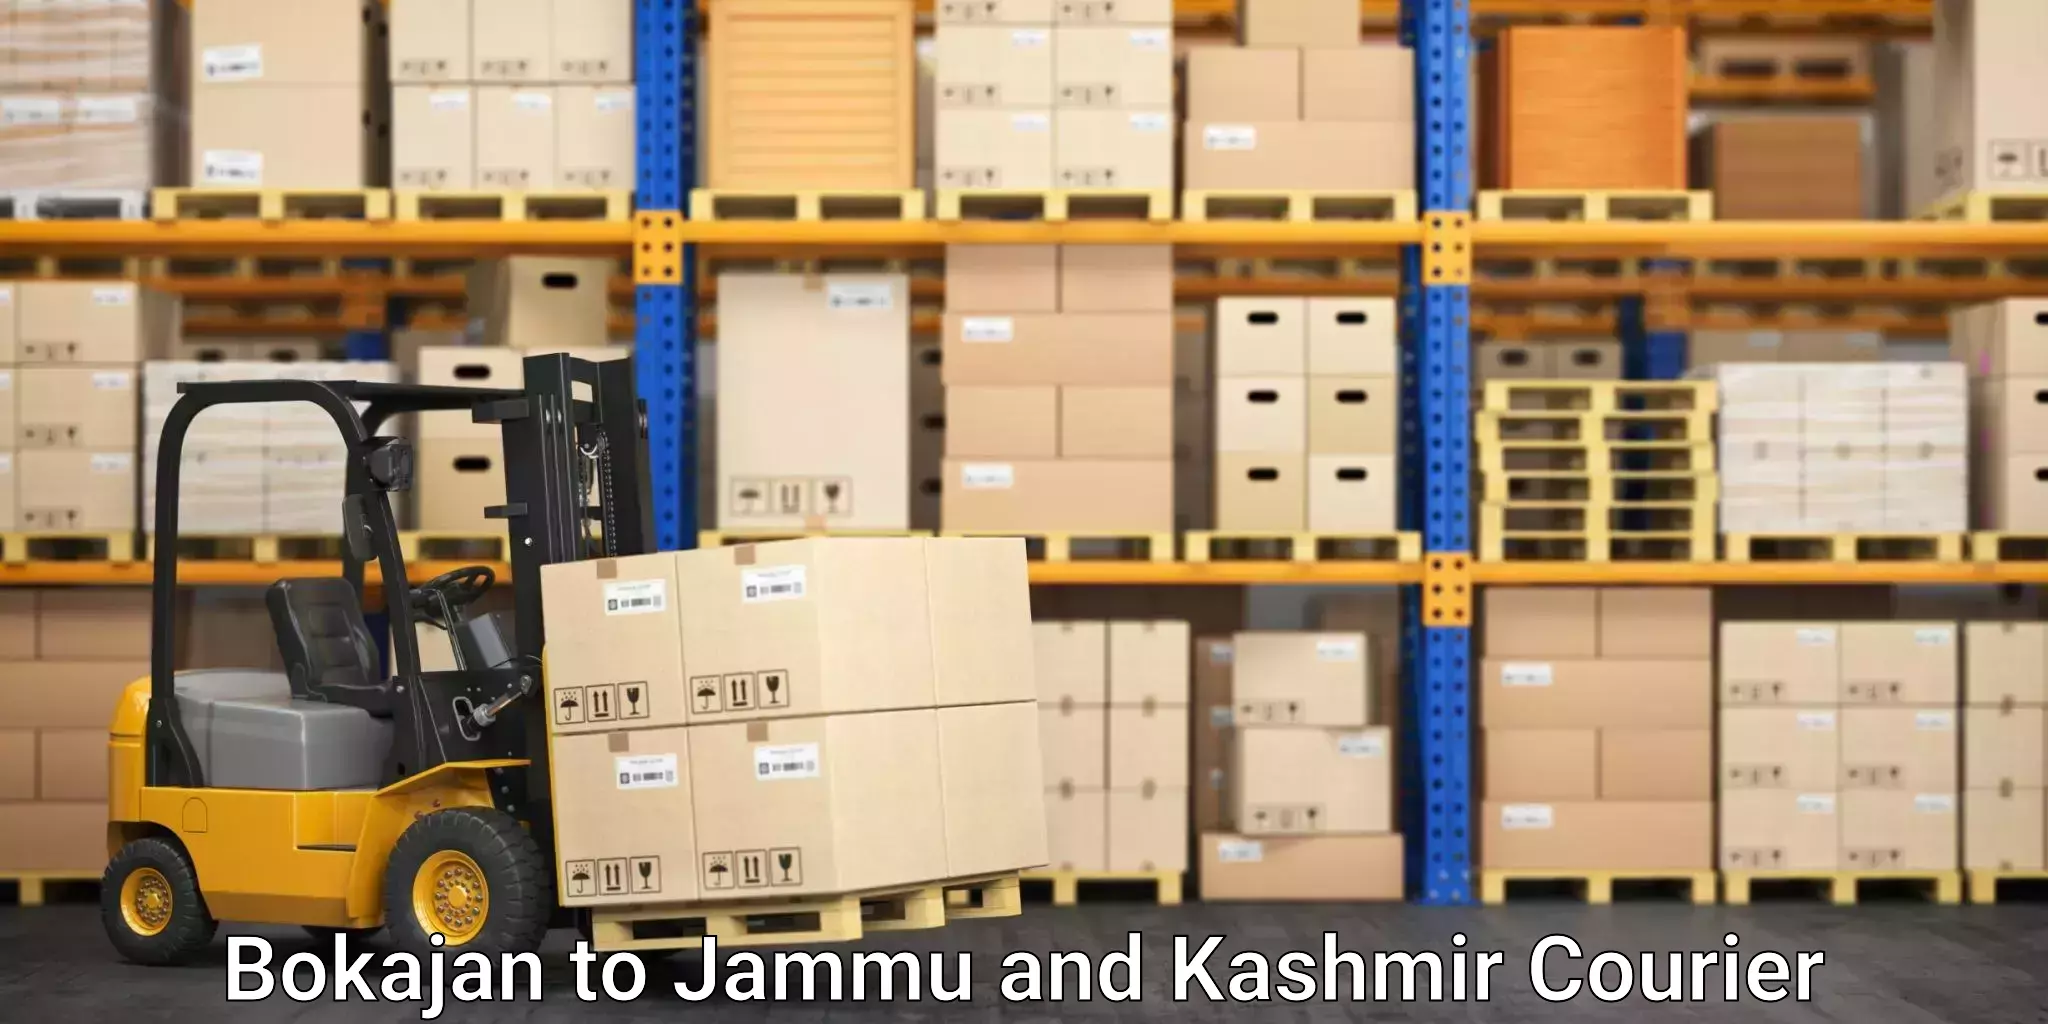 Global shipping networks Bokajan to Jammu and Kashmir